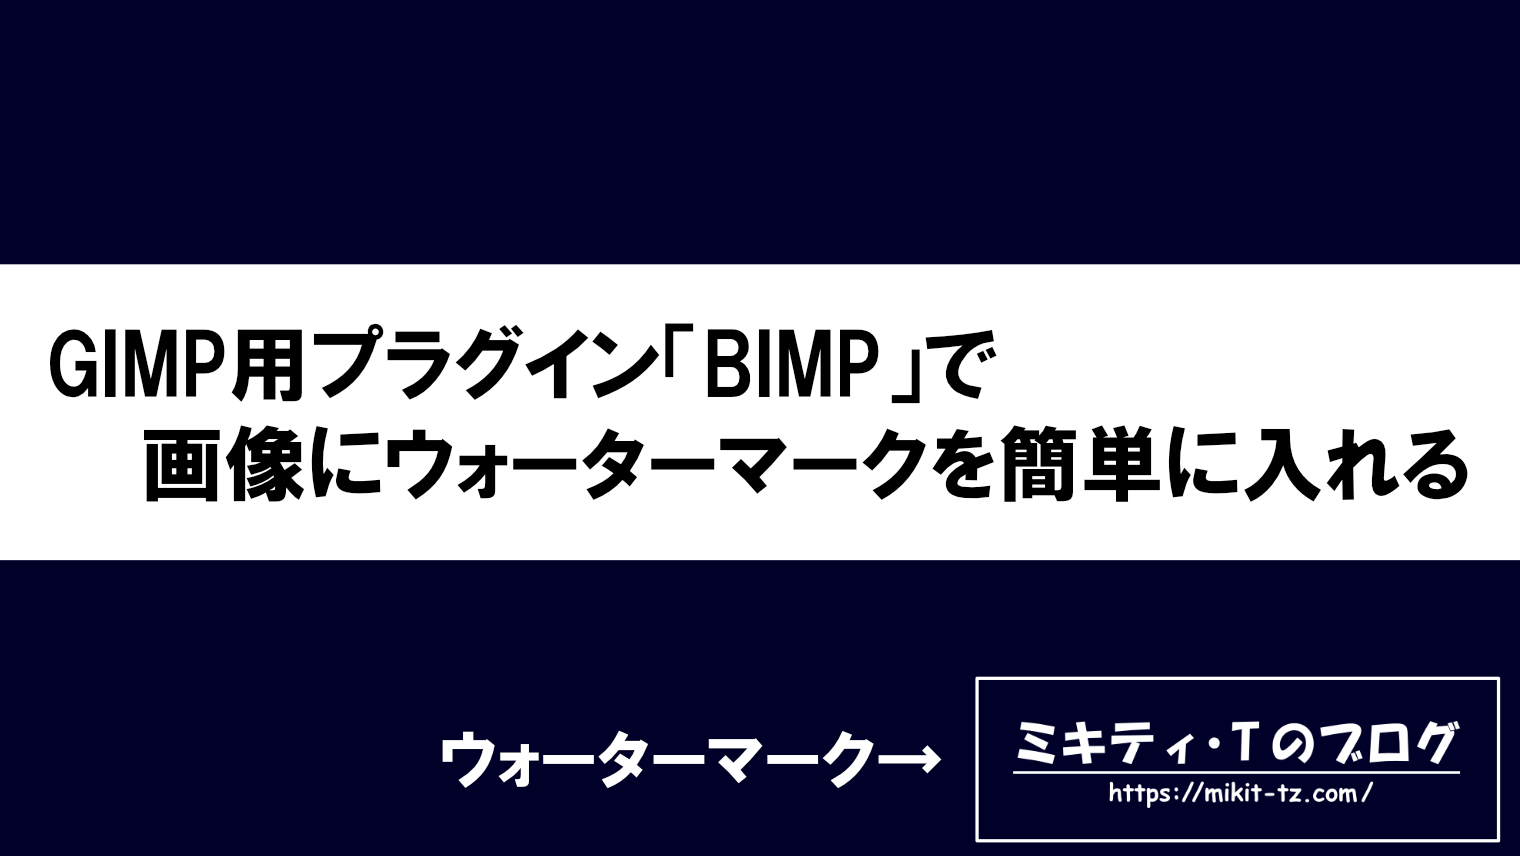 GIMP用プラグイン「BIMP」で画像にウォーターマークを簡単に入れる